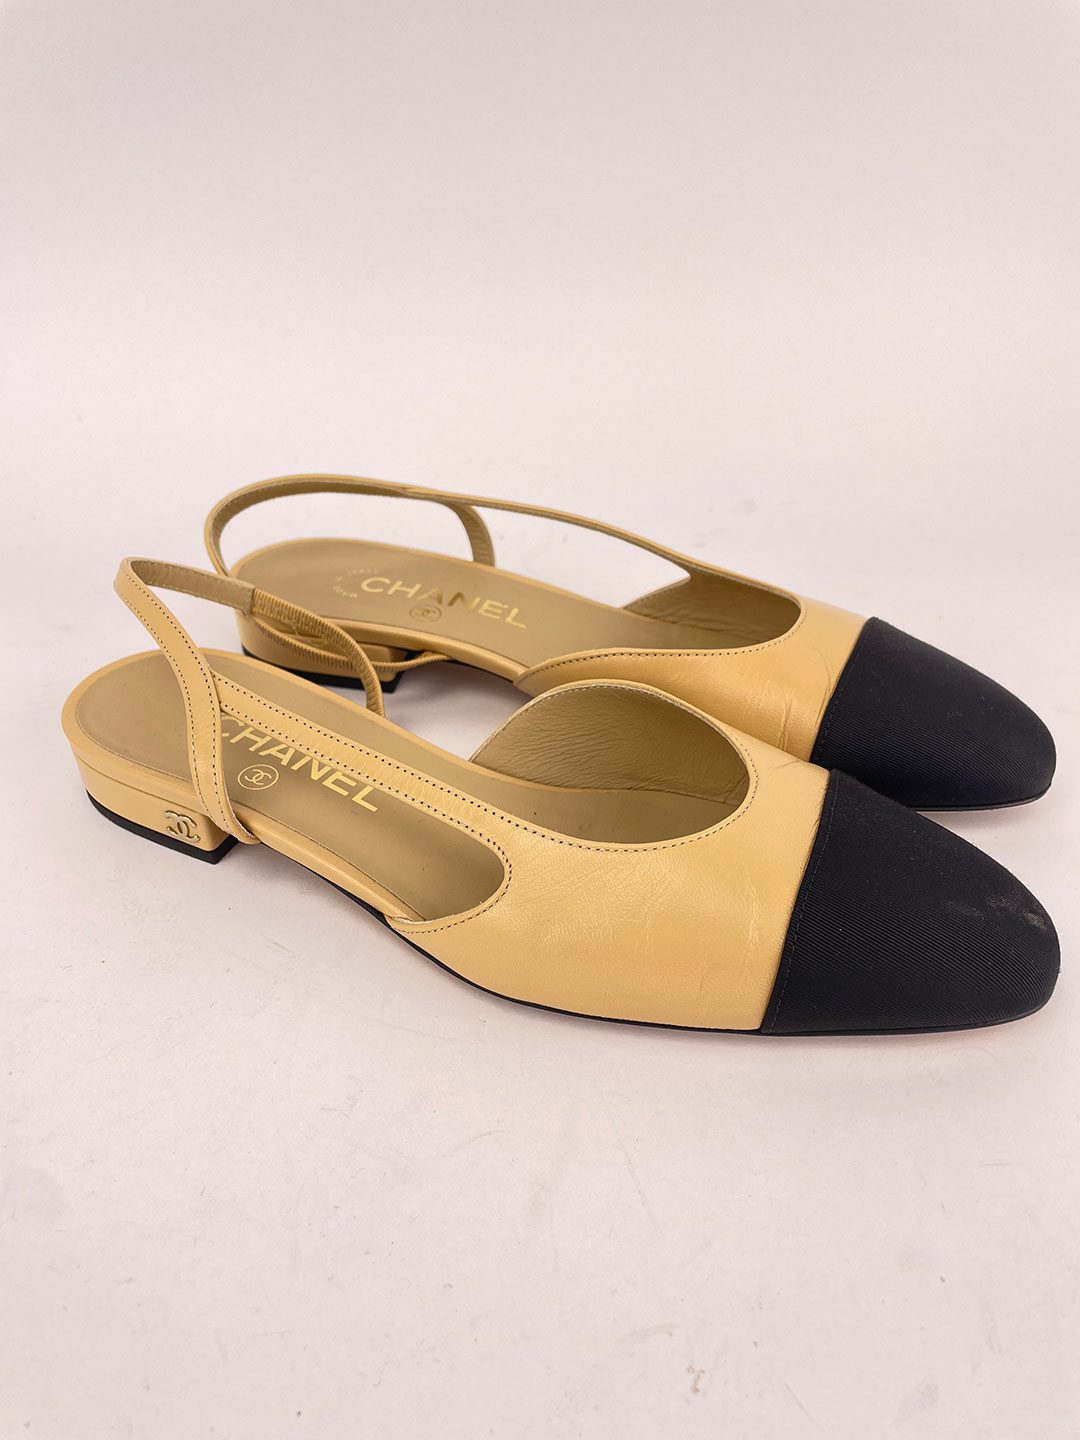 3.1 Phillip Lim Beige/Black Canvas Flat Sandals Size 10.5/41